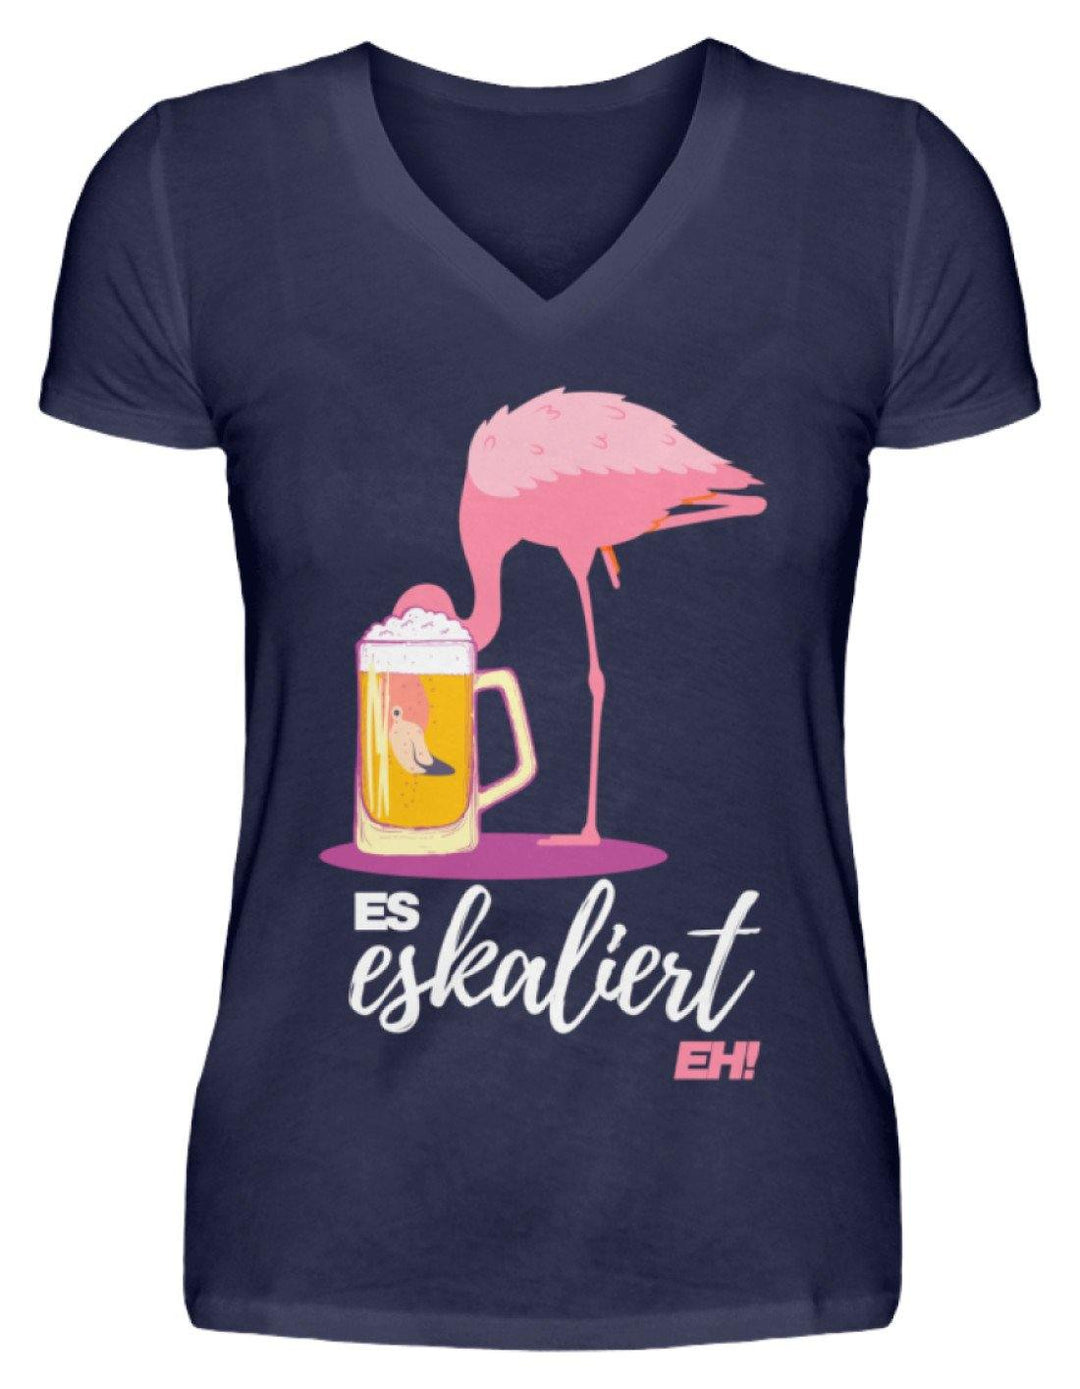 Es Eskaliert Eh - Flamingo  - V-Neck Damenshirt - Words on Shirts Sag es mit dem Mittelfinger Shirts Hoodies Sweatshirt Taschen Gymsack Spruch Sprüche Statement